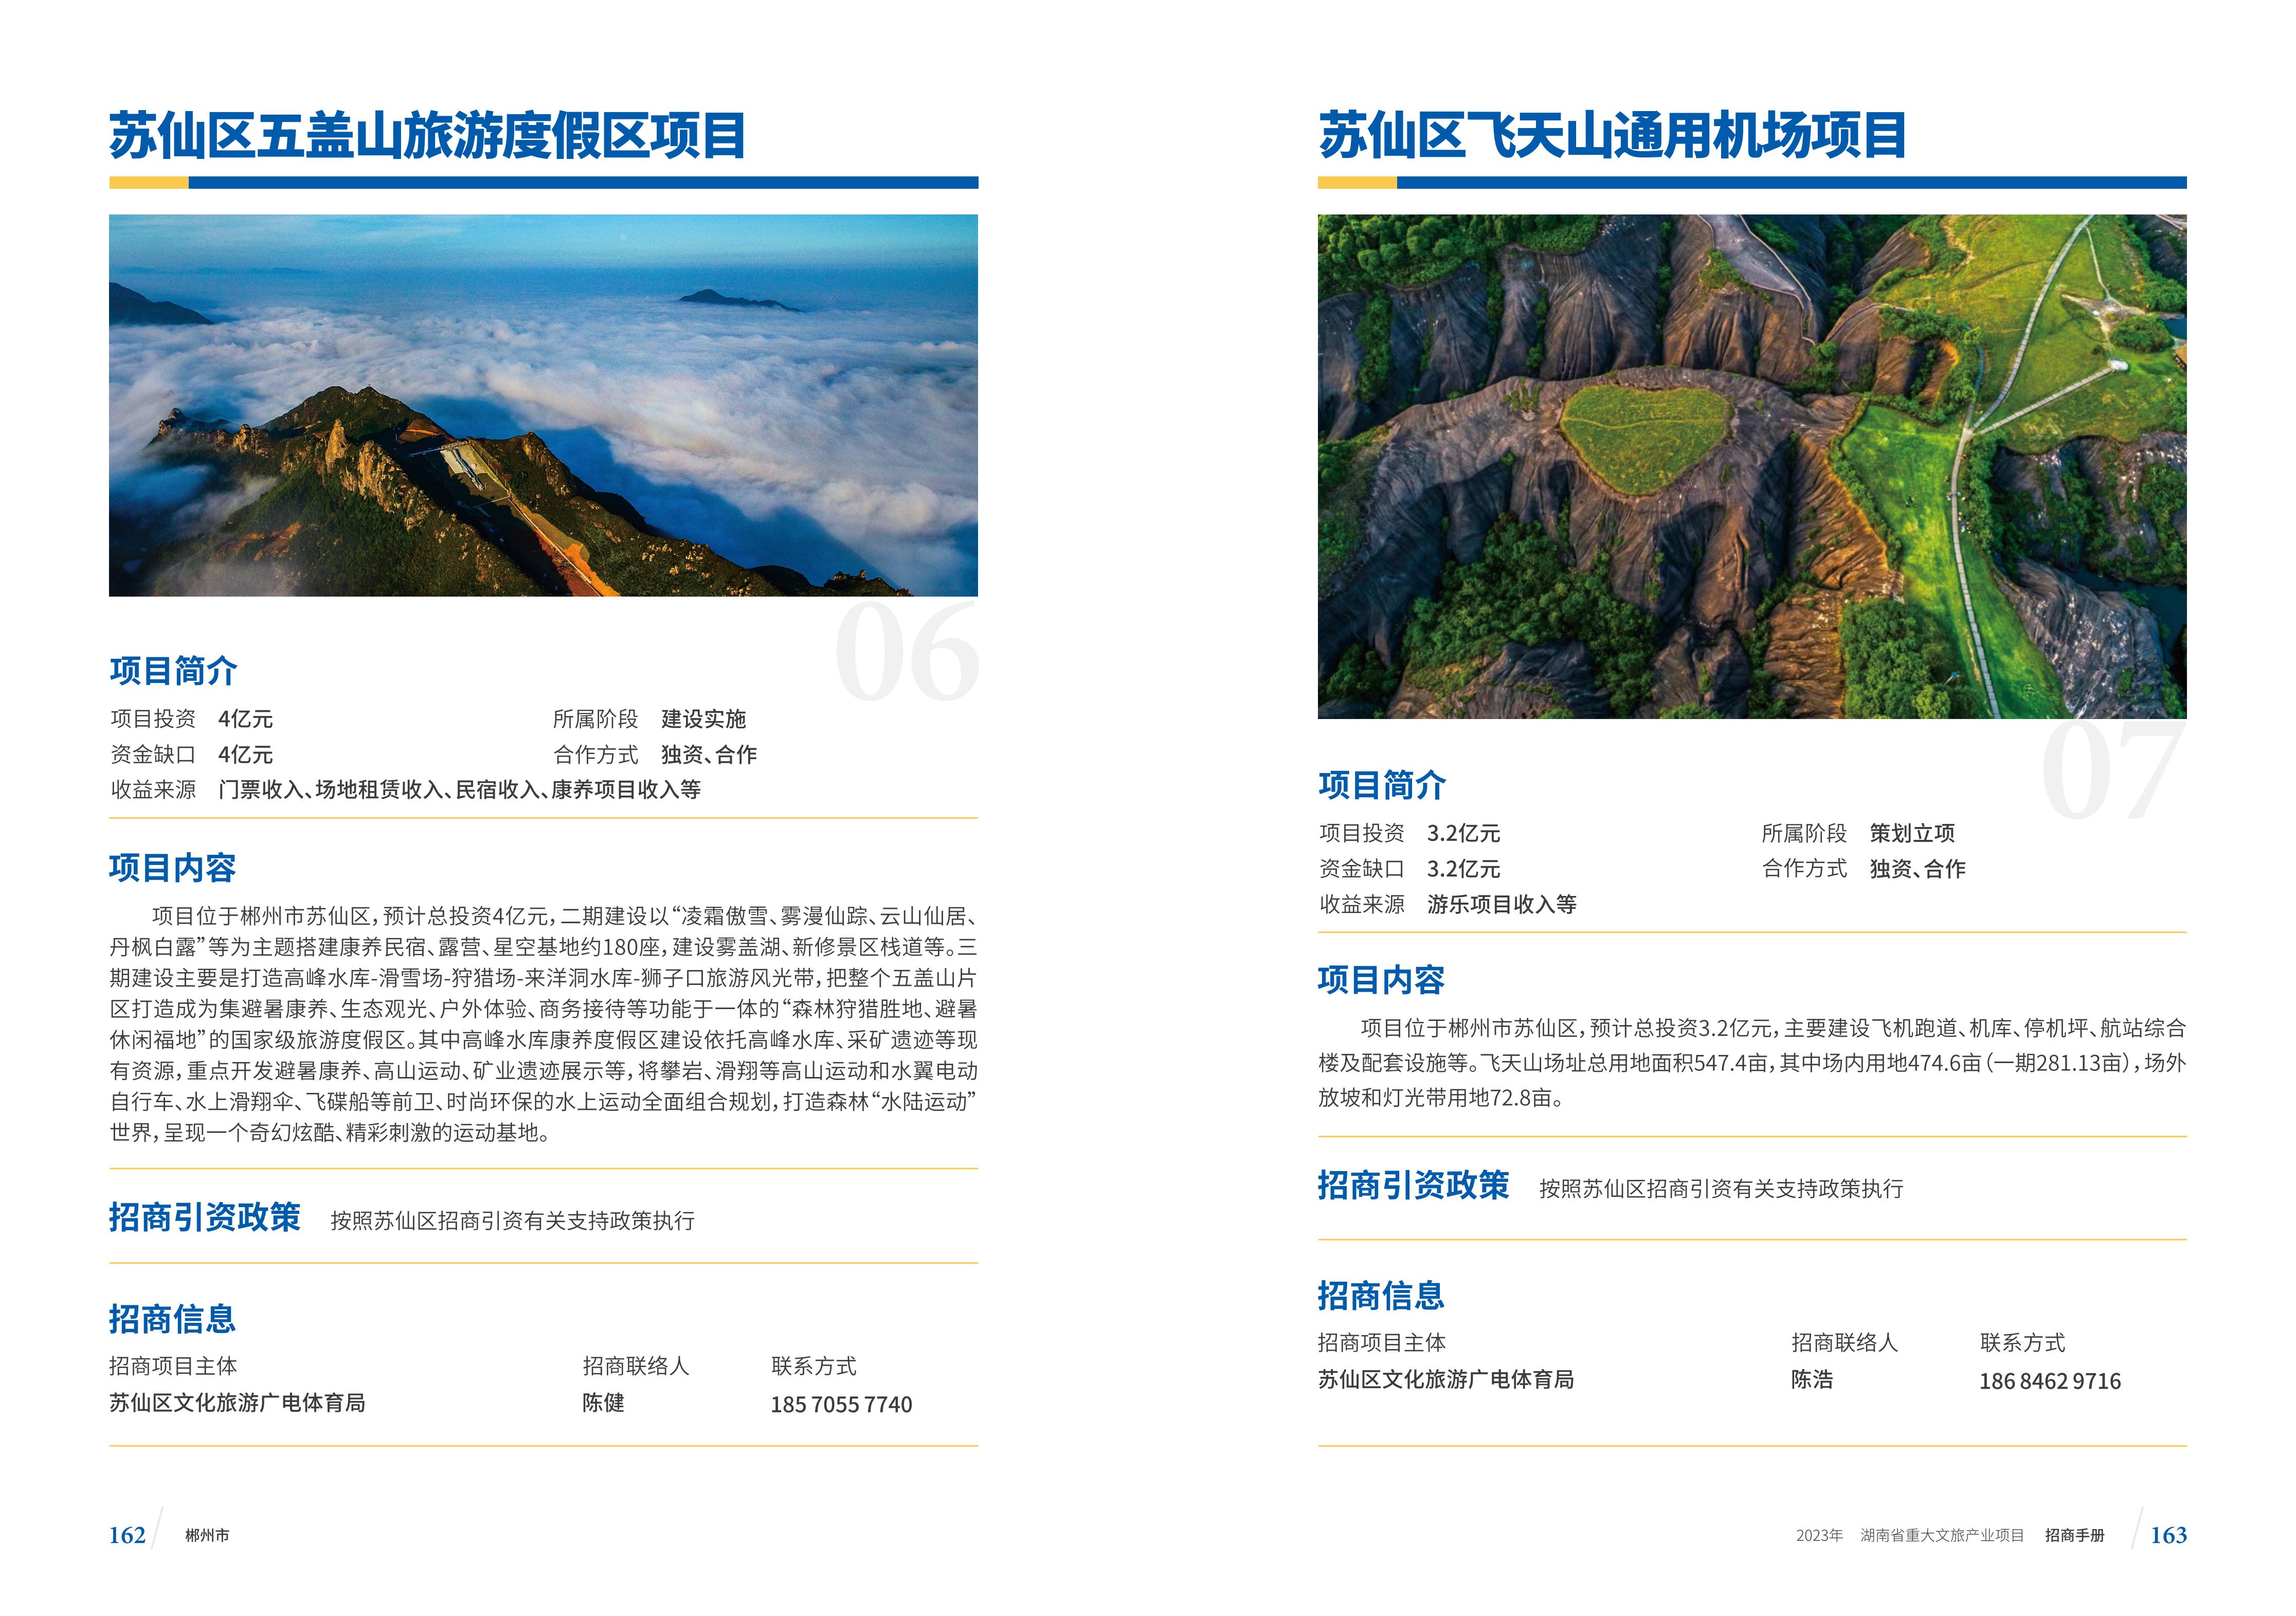 湖南省重大文旅产业项目招手册线上链接版_89.jpg